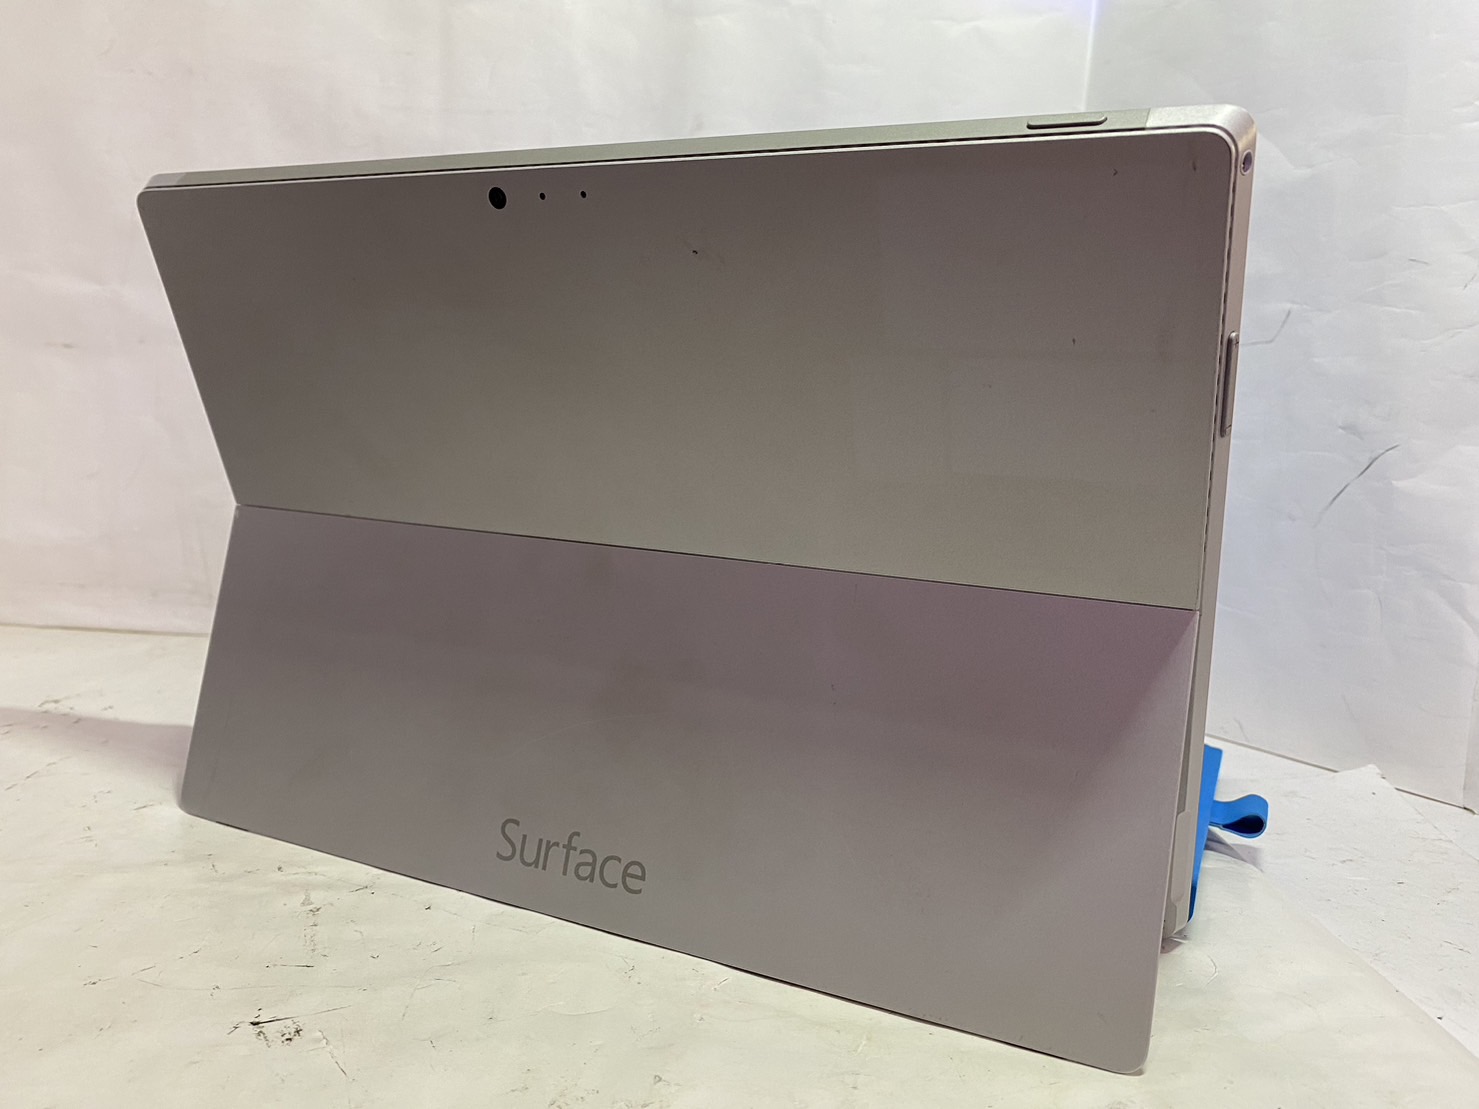 Microsoft(マイクロソフト) Surface Pro 3 1631の激安通販 - パソコン